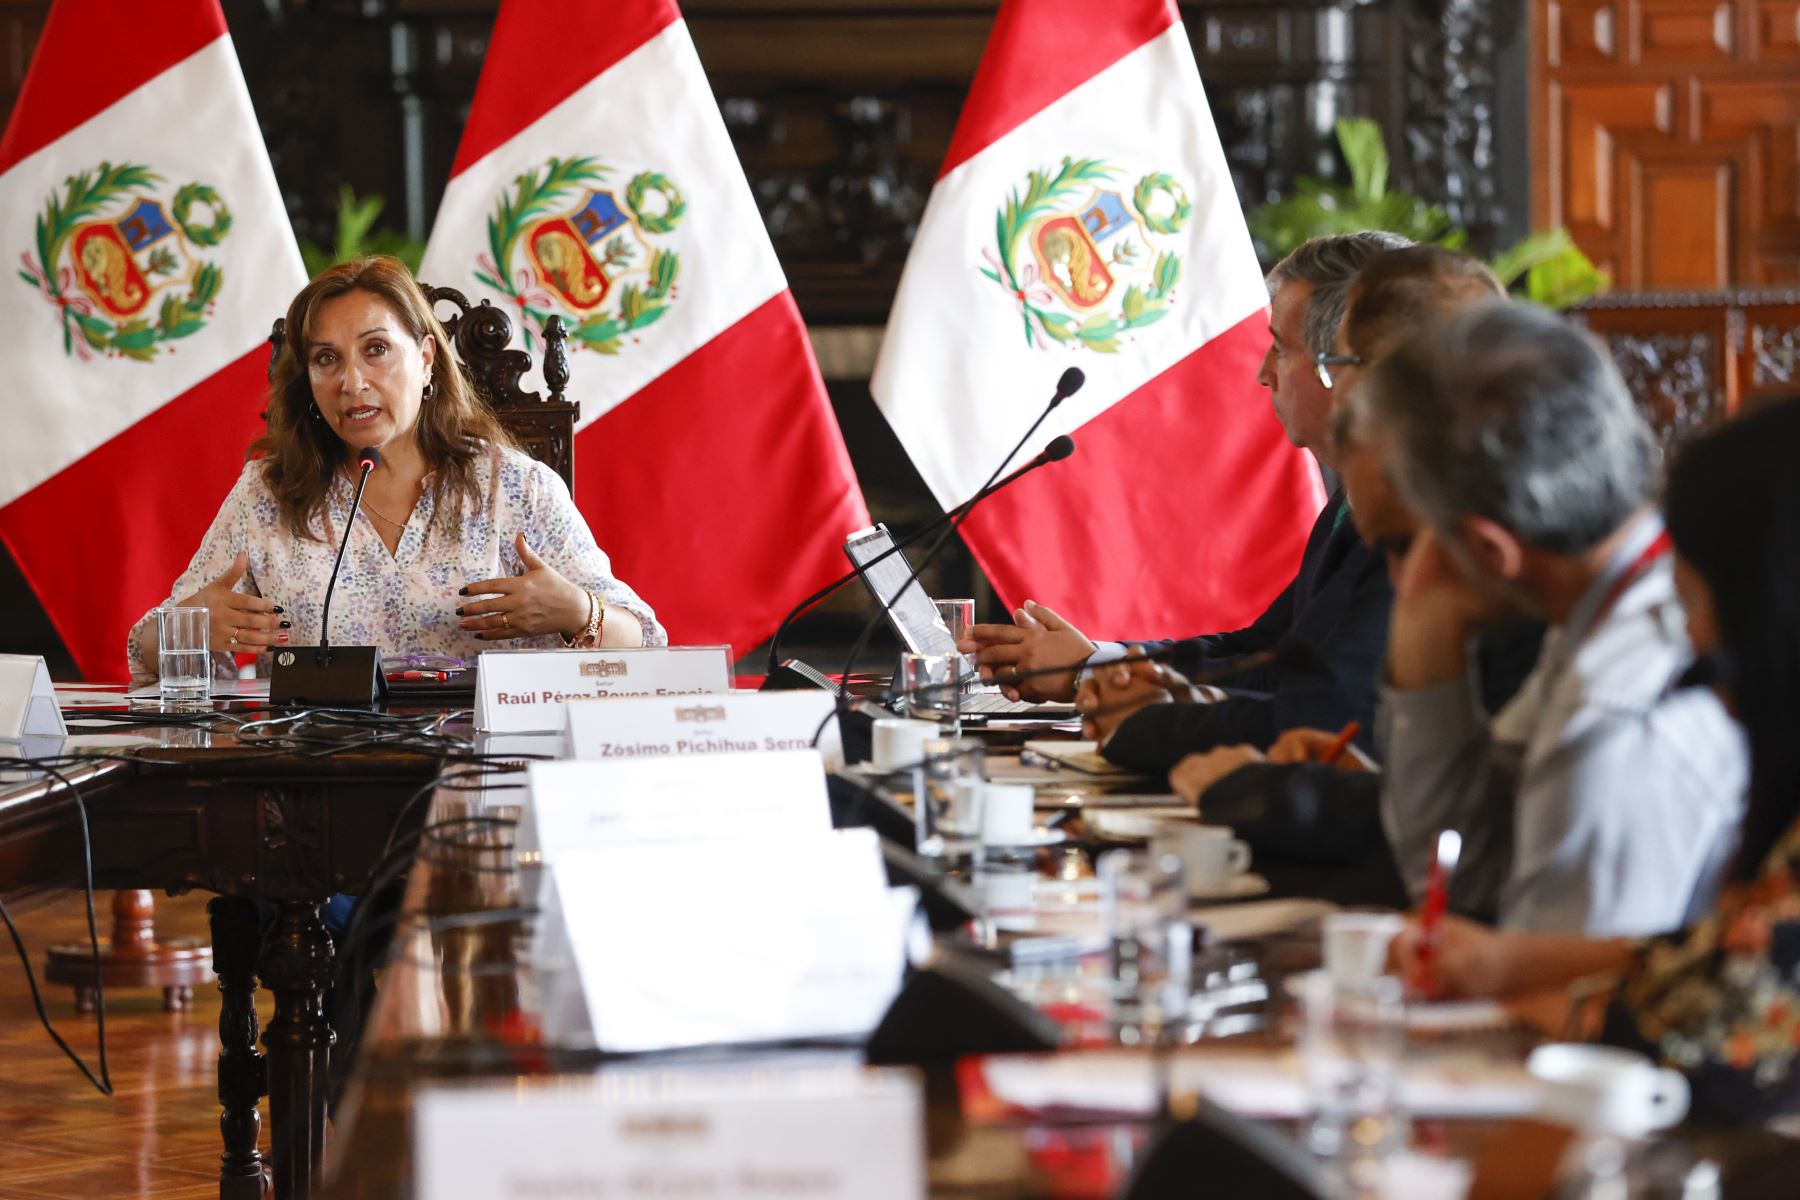 Presidenta Dina Boluarte sostuvo reunión con miembros de la Federación Peruana de Cajas Municipales de Ahorro y Crédito

Foto: ANDINA/Prensa Presidencia